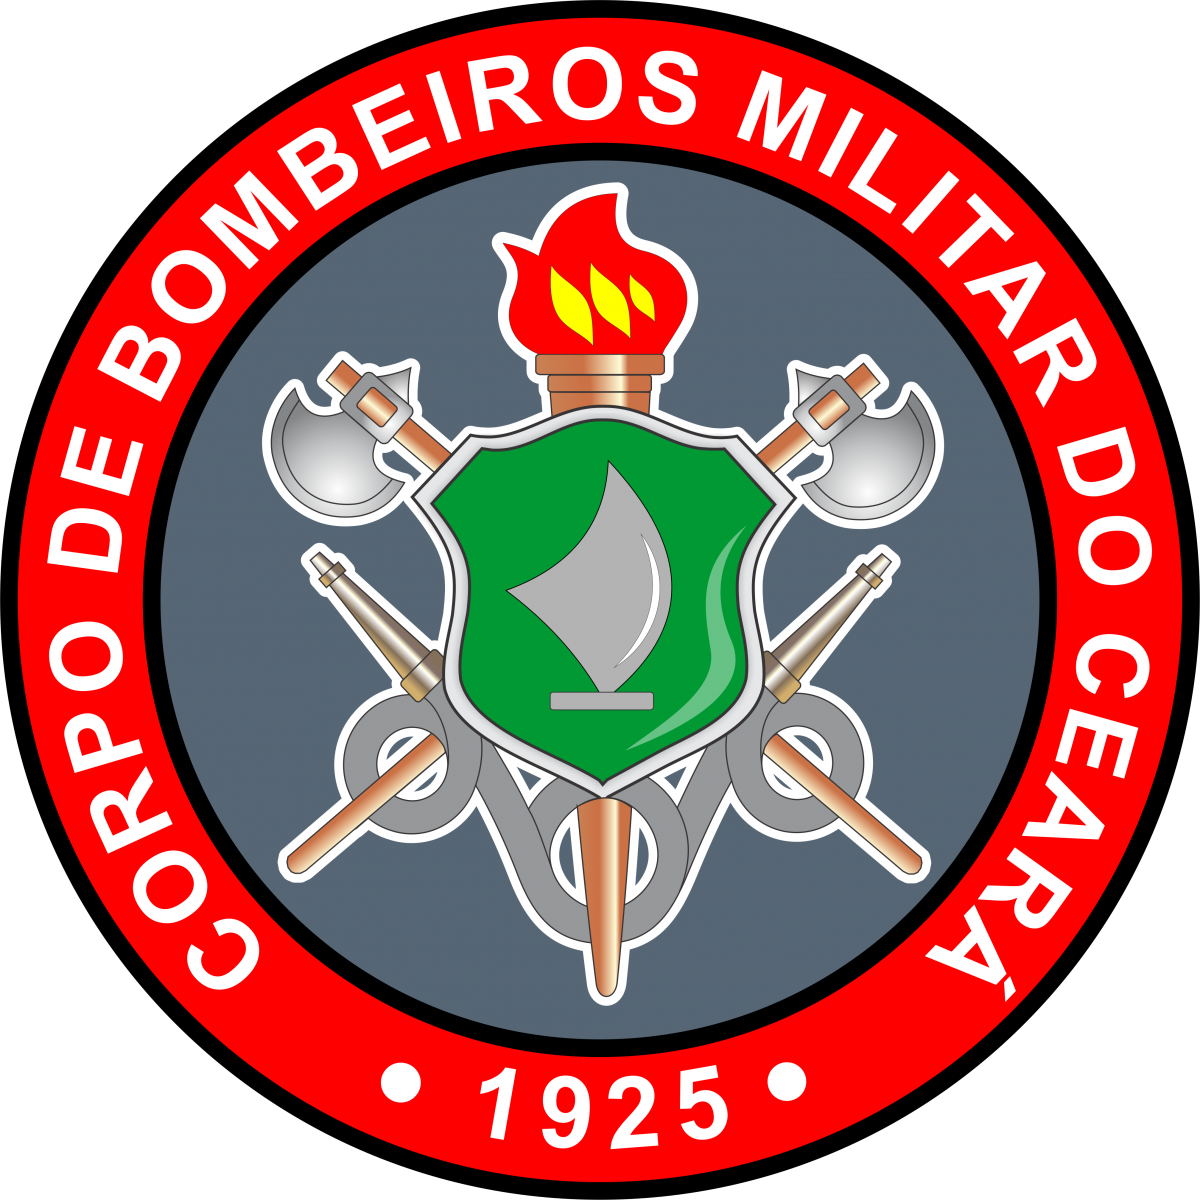 CBM CE - Corpo de Bombeiros Militar do Ceará